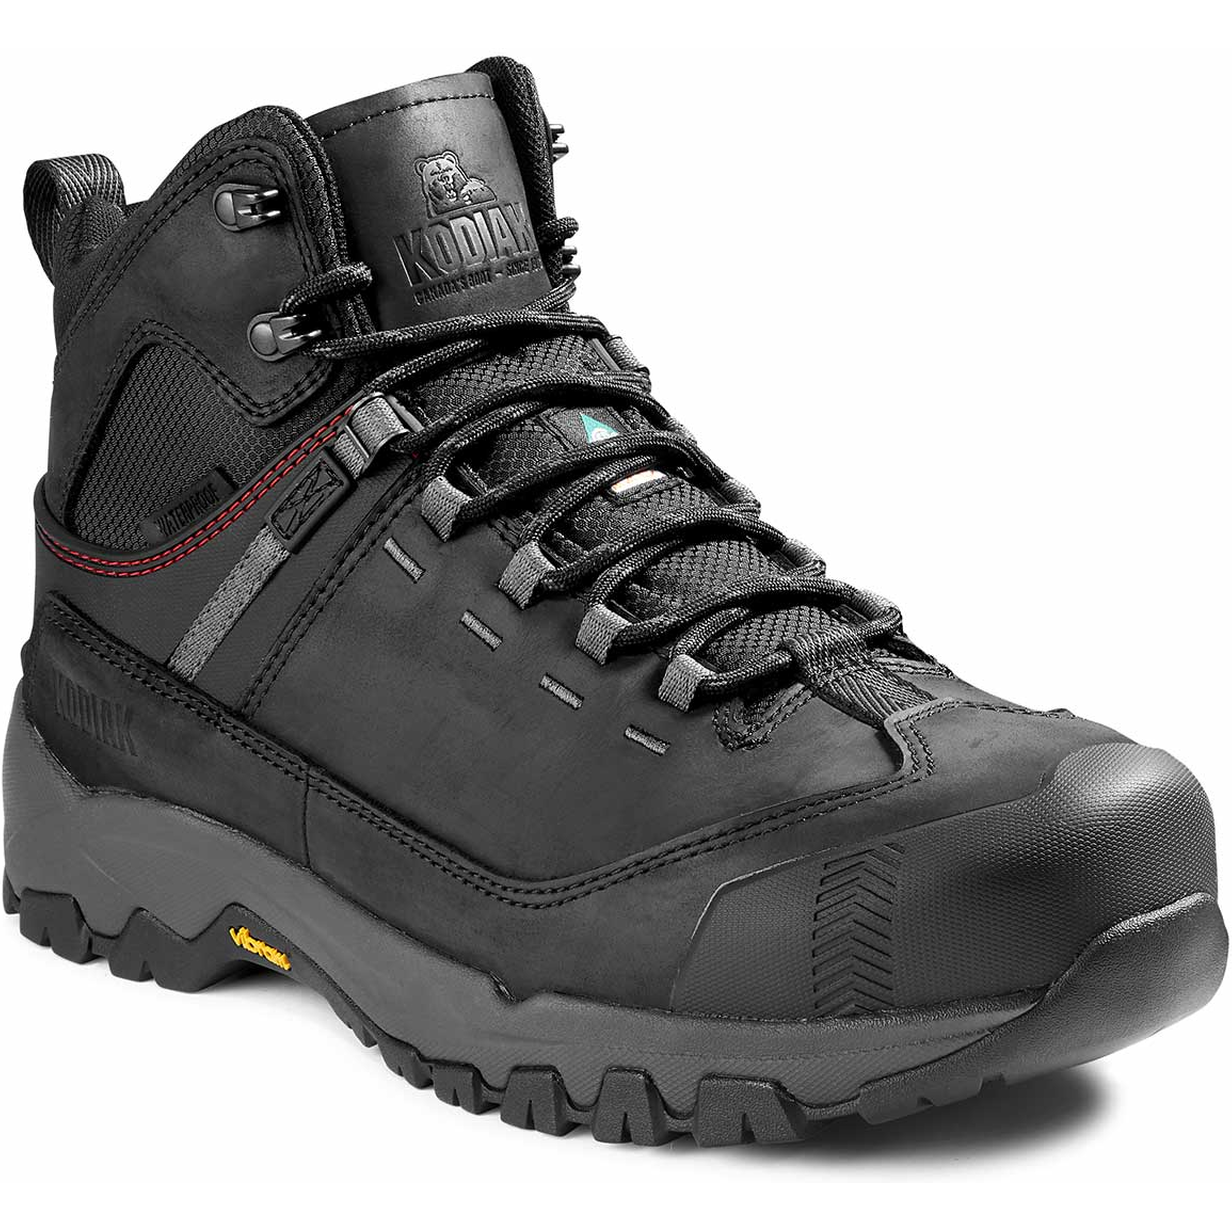 Kodiak Men's Quest Bound Comp Toe WP Hiker Work Boot -Black- 4TELBK 7 / Wide / Black - Overlook Boots